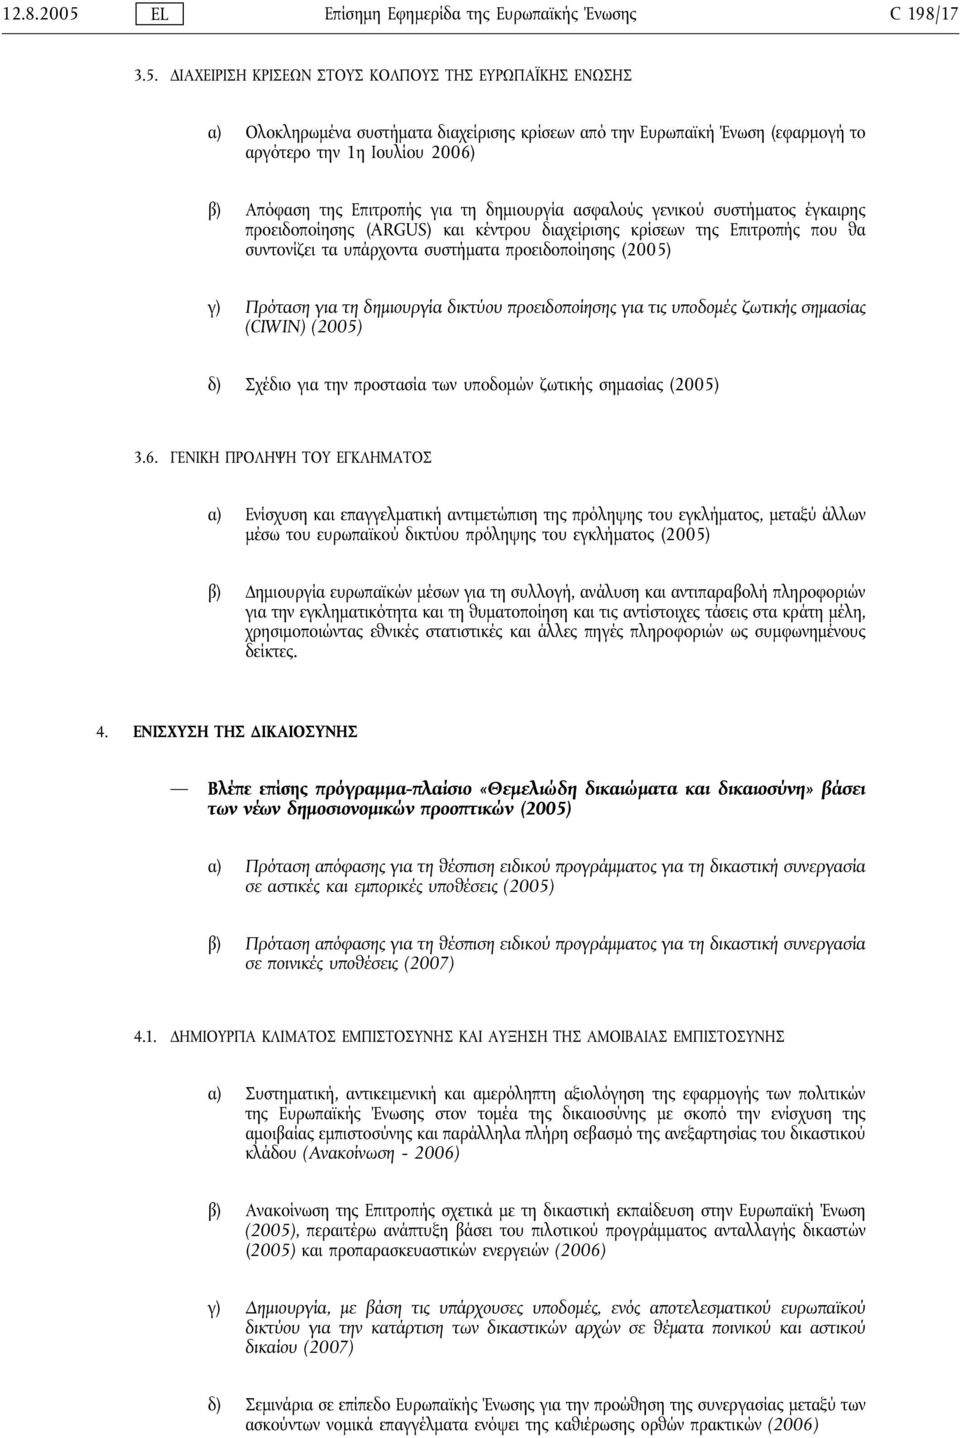 ΔΙΑΧΕΙΡΙΣΗ ΚΡΙΣΕΩΝ ΣΤΟΥΣ ΚΟΛΠΟΥΣ ΤΗΣ ΕΥΡΩΠΑΪΚΗΣ ΕΝΩΣΗΣ α) Ολοκληρωμένα συστήματα διαχείρισης κρίσεων από την Ευρωπαϊκή Ένωση (εφαρμογή το αργότερο την 1η Ιουλίου 2006) β) Απόφαση της Επιτροπής για τη